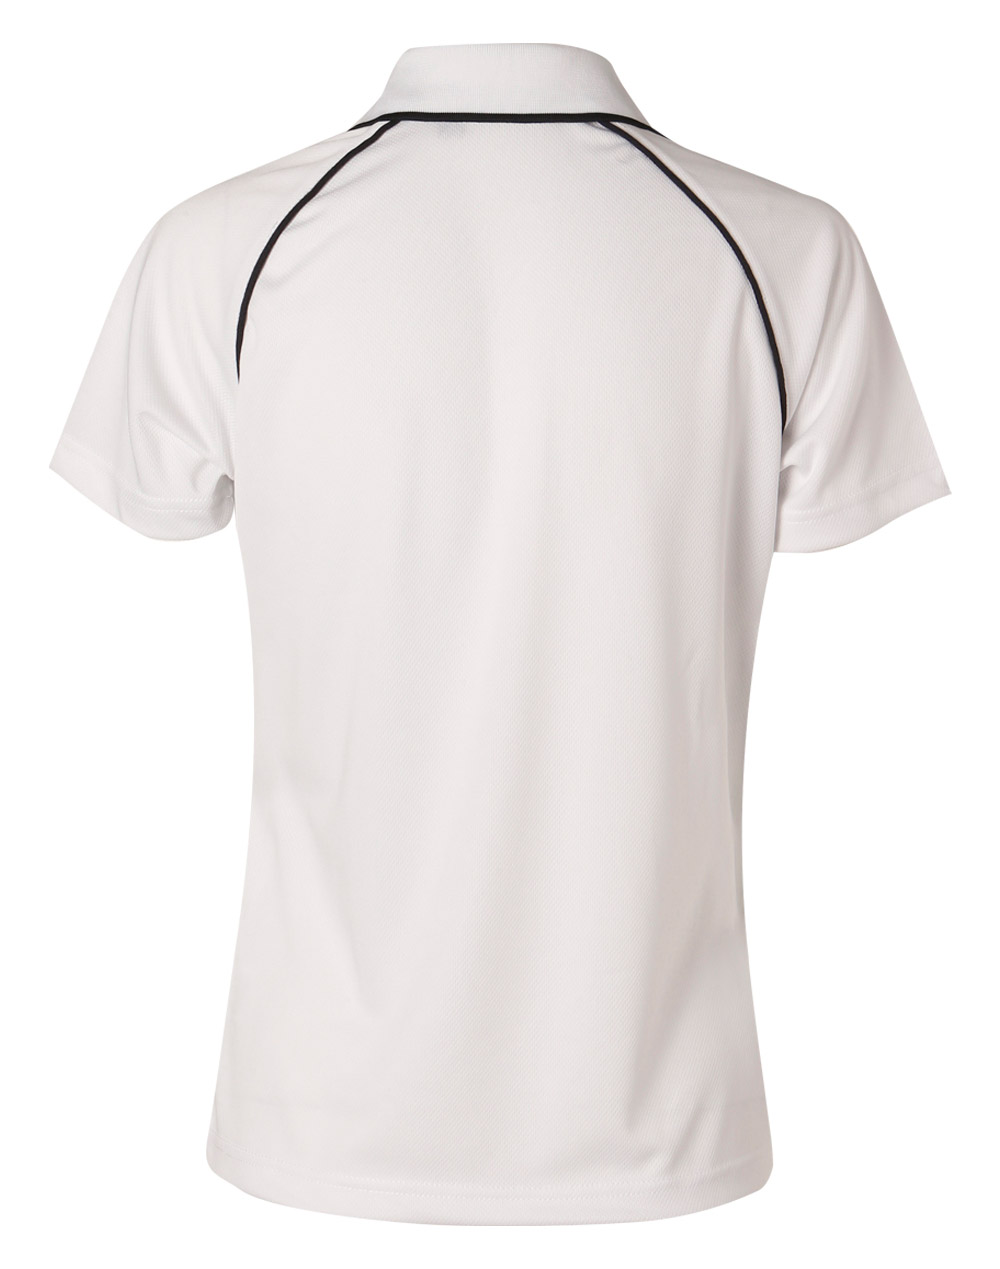 Custom Men's (White Navy) Champion Raglan Polo Shirts Online Perth Australia